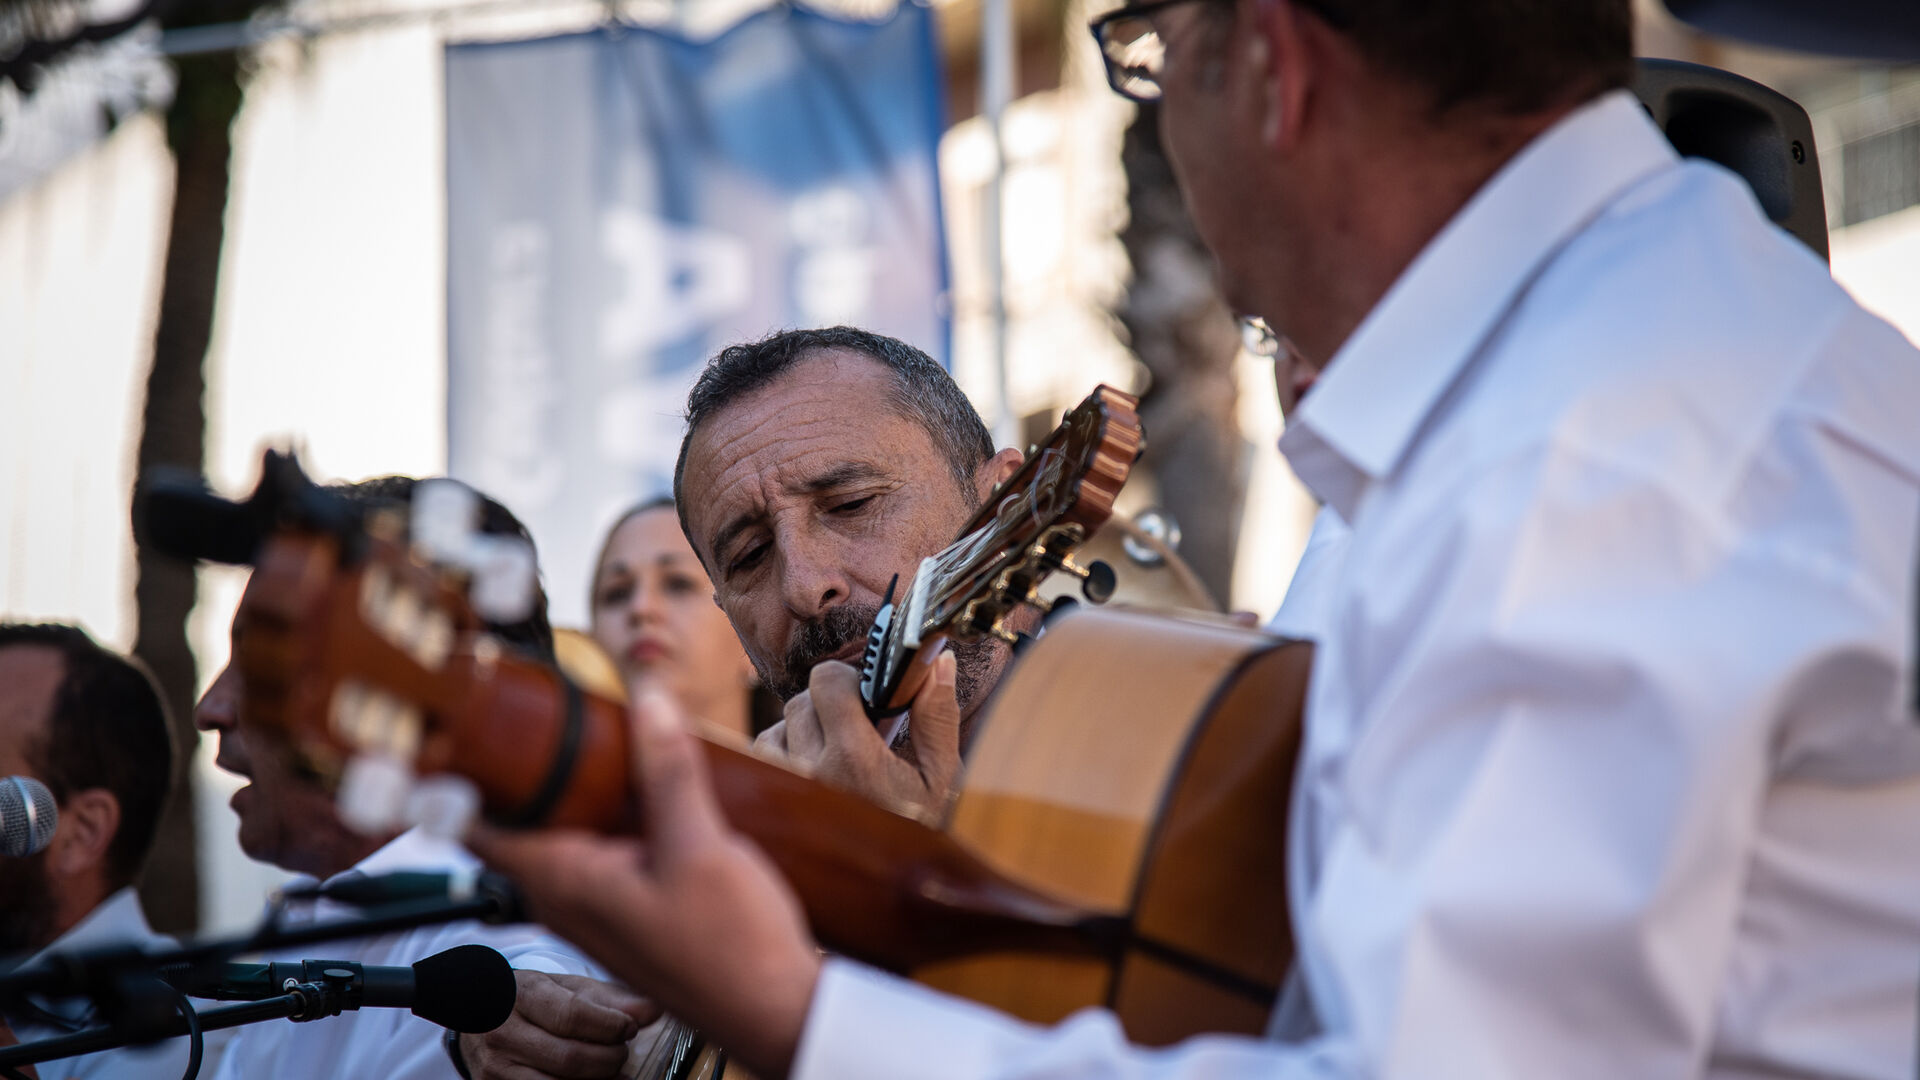 Im&aacute;genes de la pe&ntilde;a Vive Alosno en el festival flamenco Ciudad de Huelva